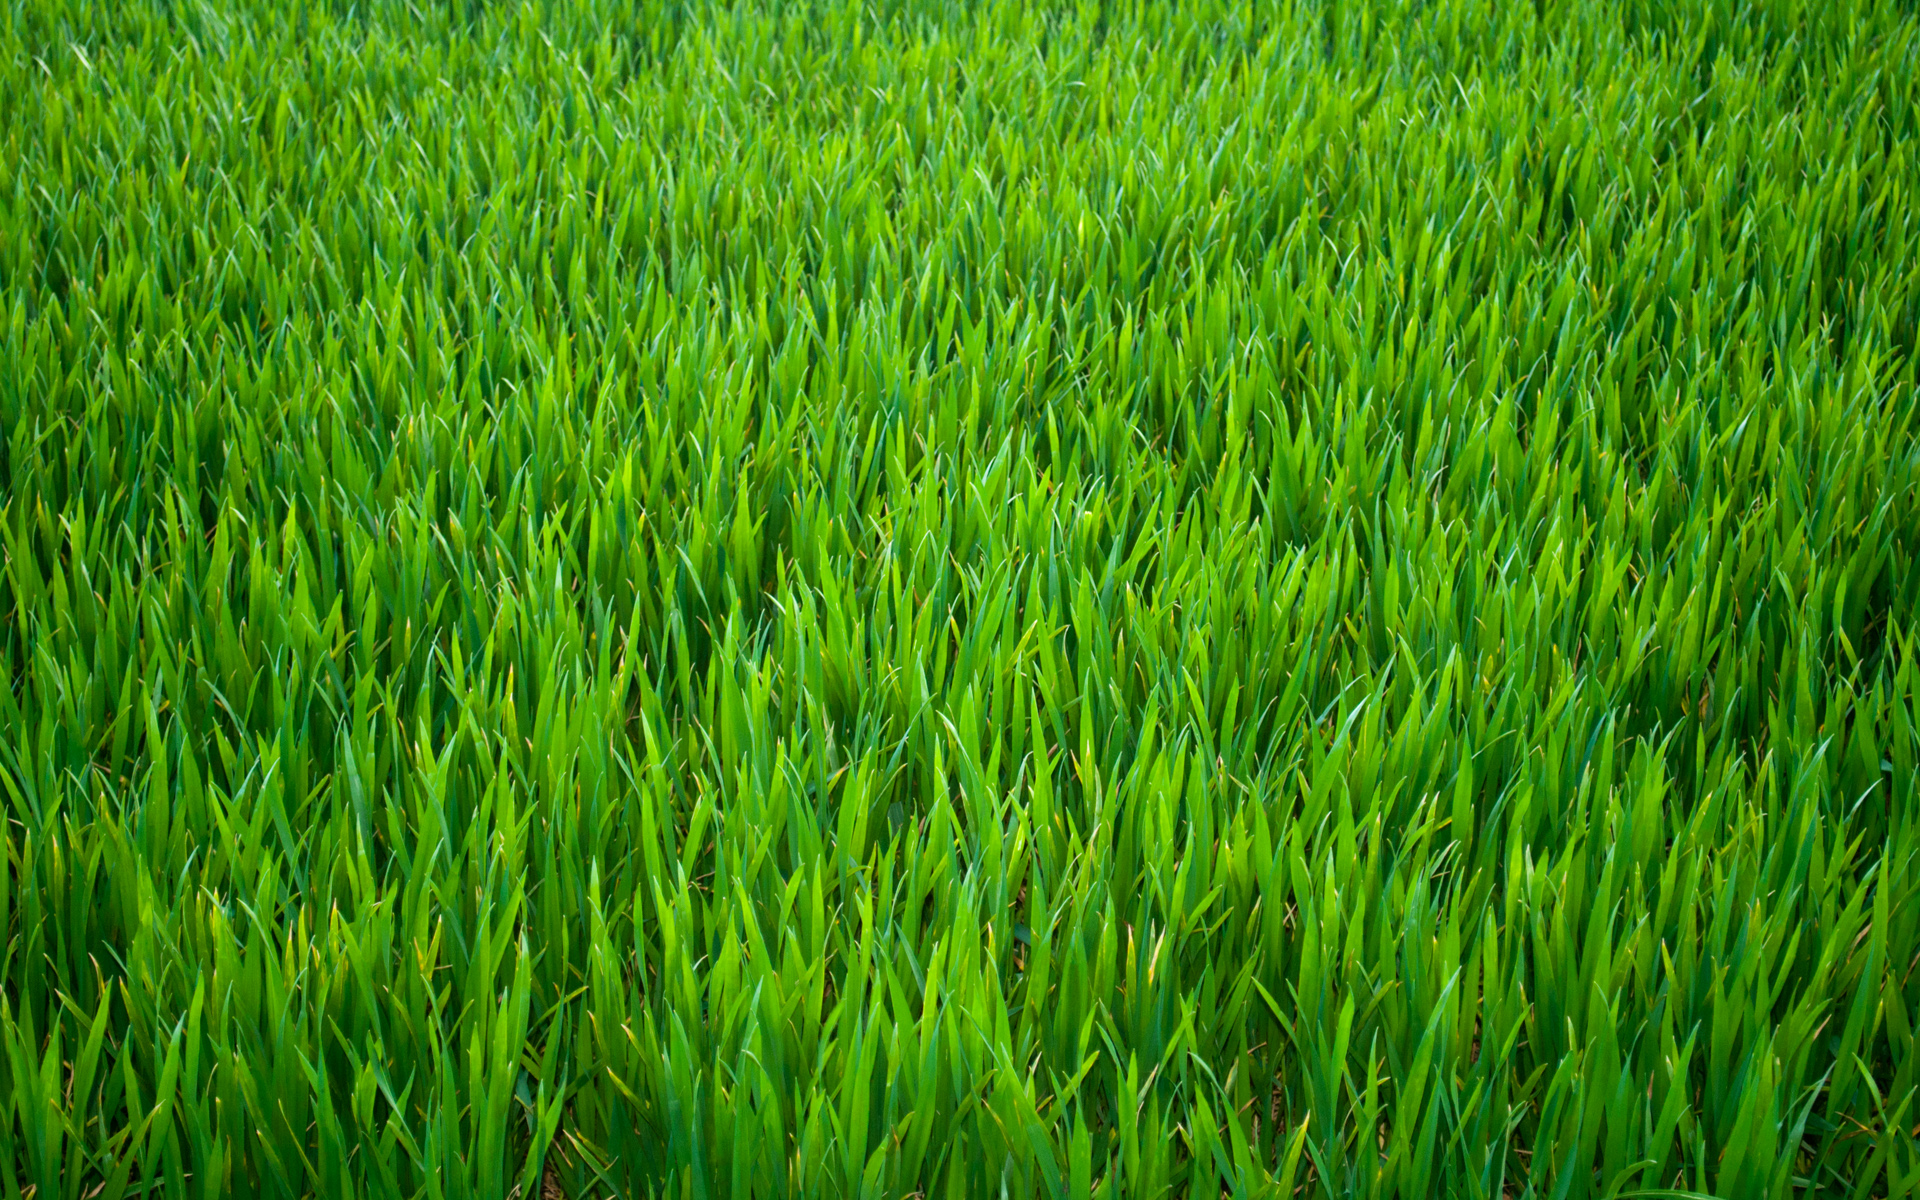 444-r116-grass11.jpg